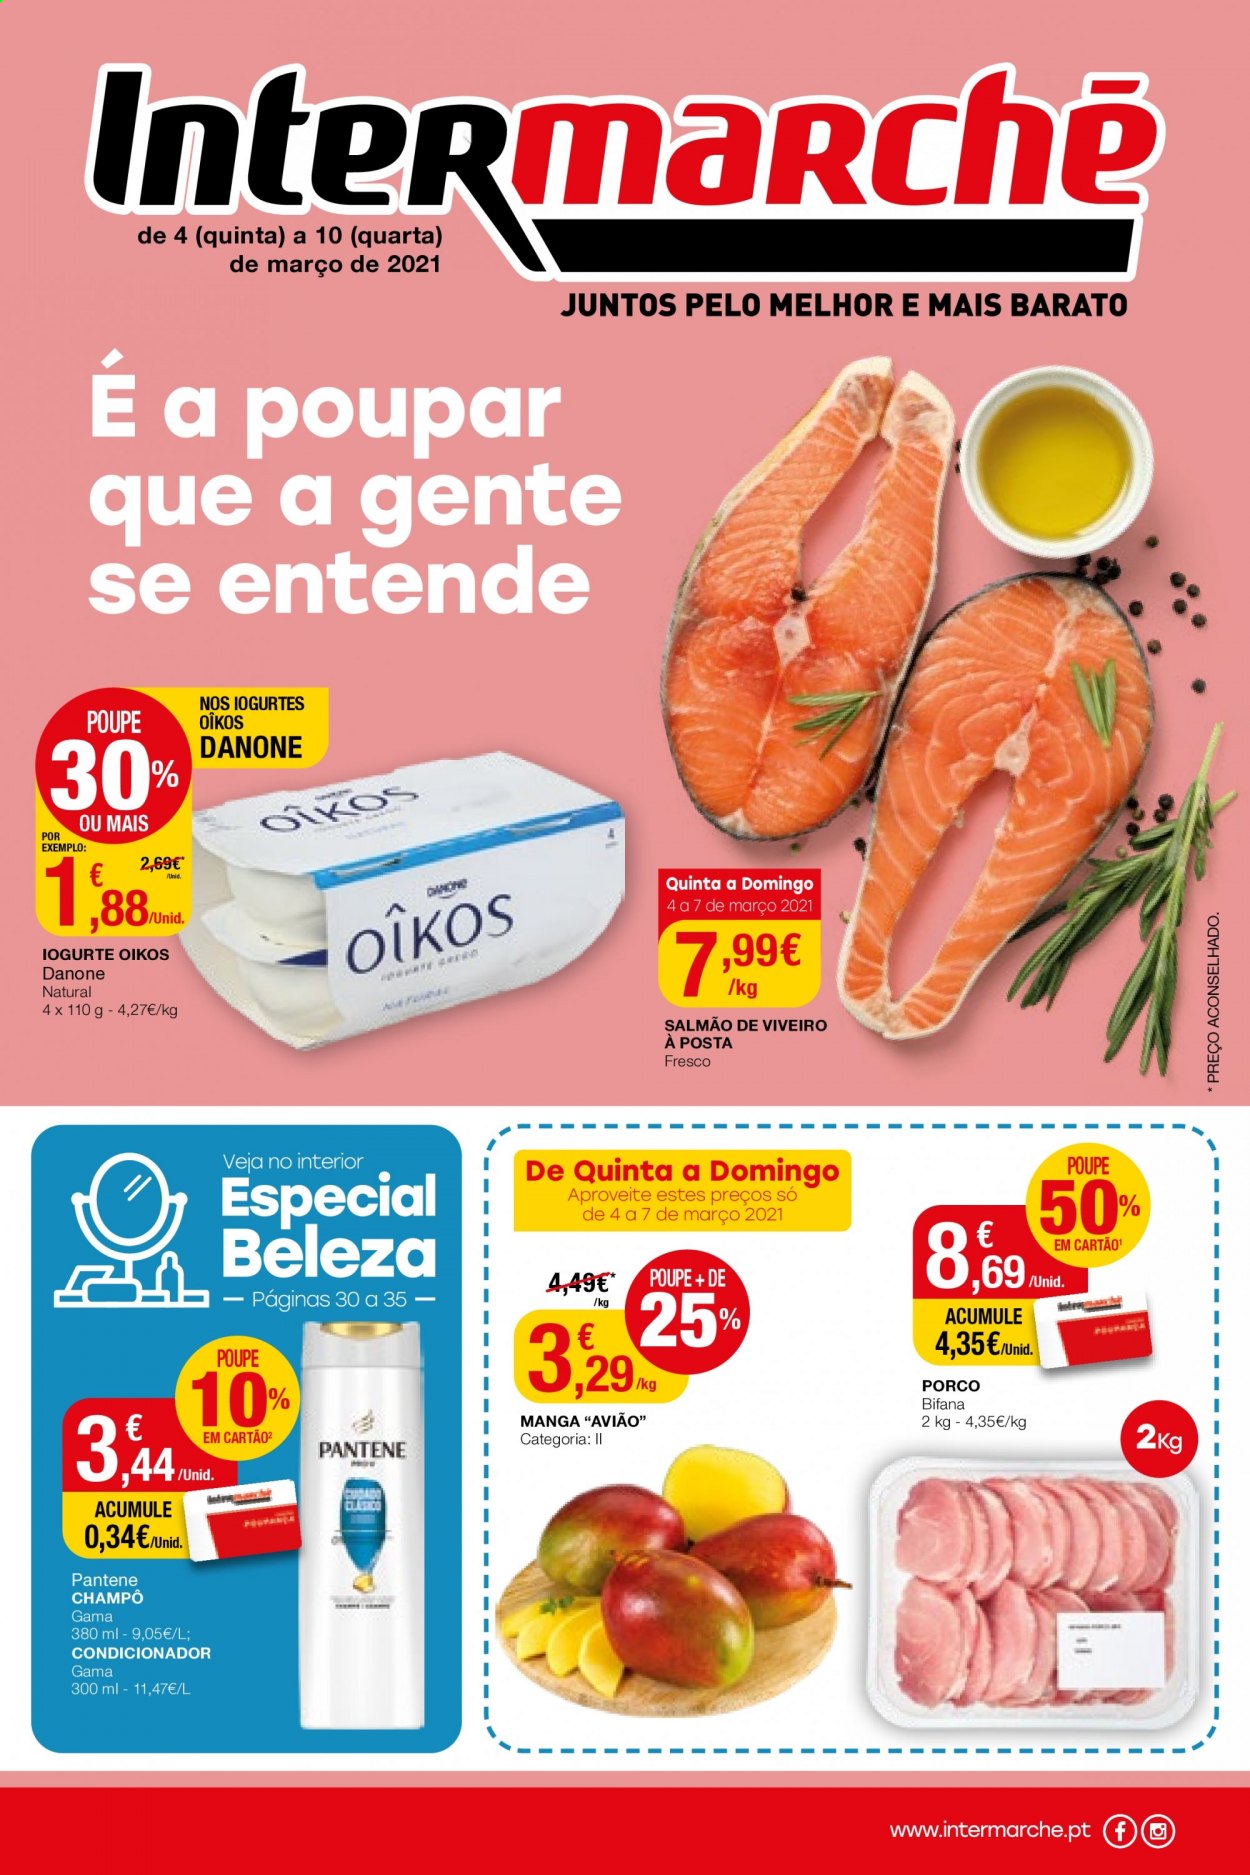 thumbnail - Folheto Intermarché - 4.3.2021 - 10.3.2021 - Produtos em promoção - salmão, iogurte, Danone, condicionador, Pantene. Página 1.